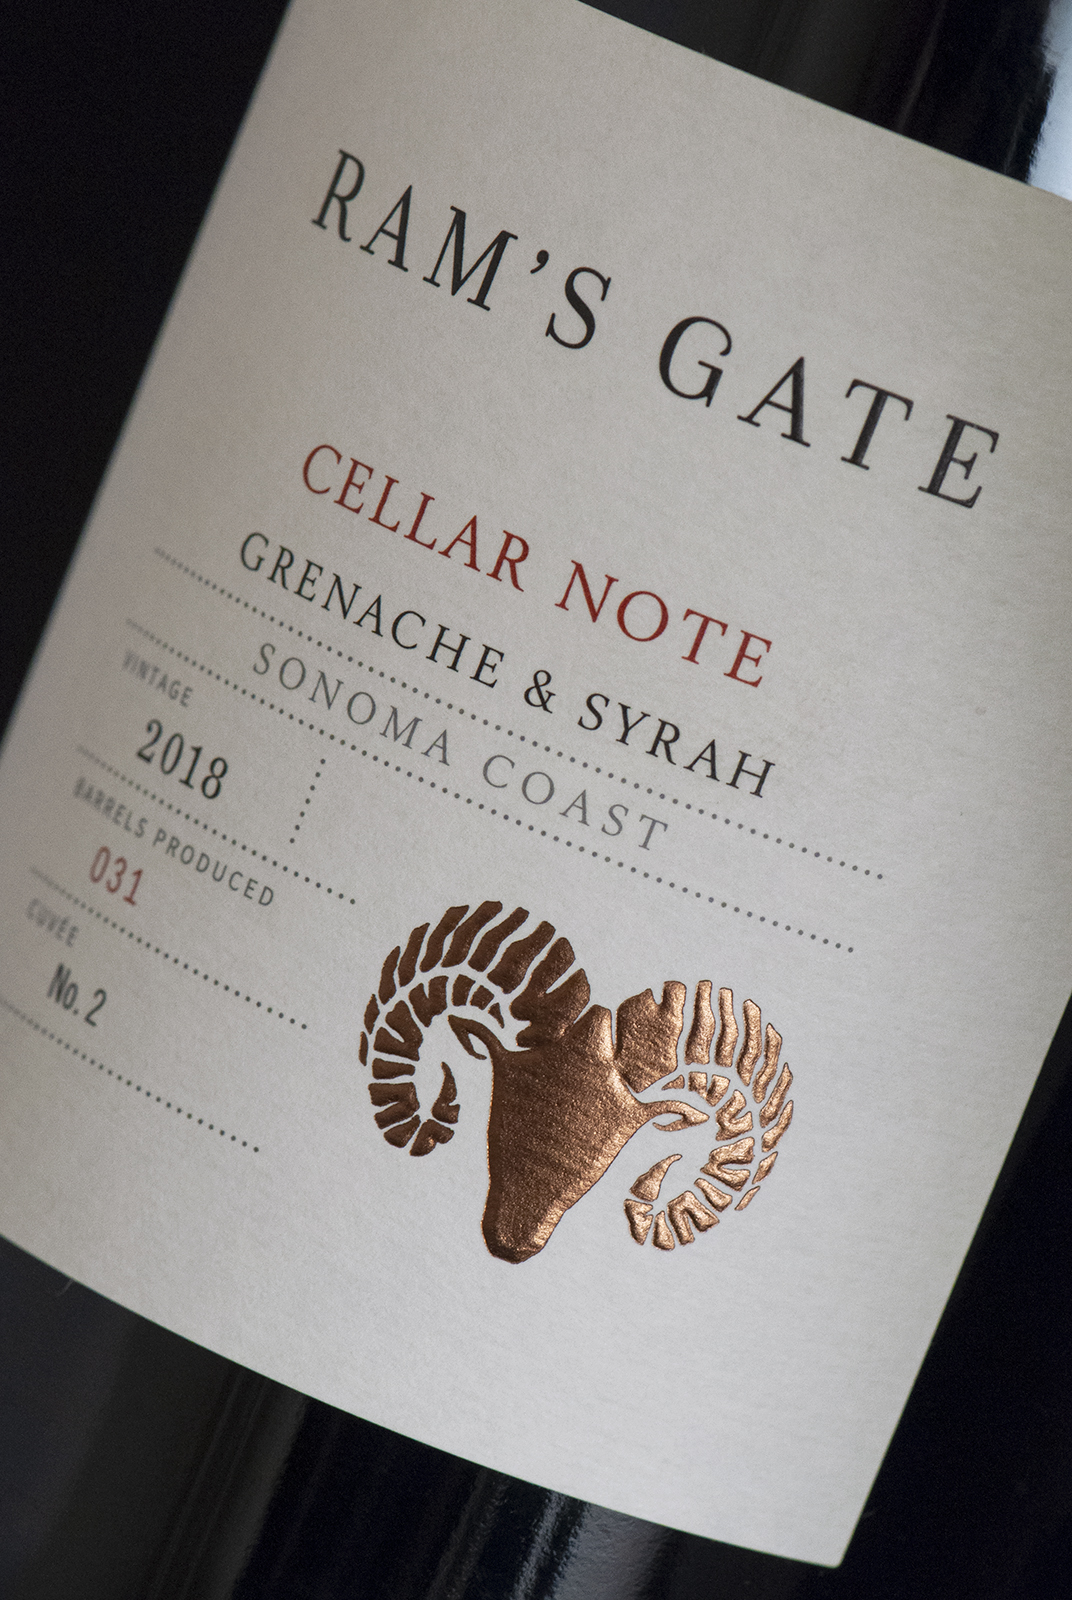 Ram’s Gate Cellar Note Tier Wine Label Design Detail